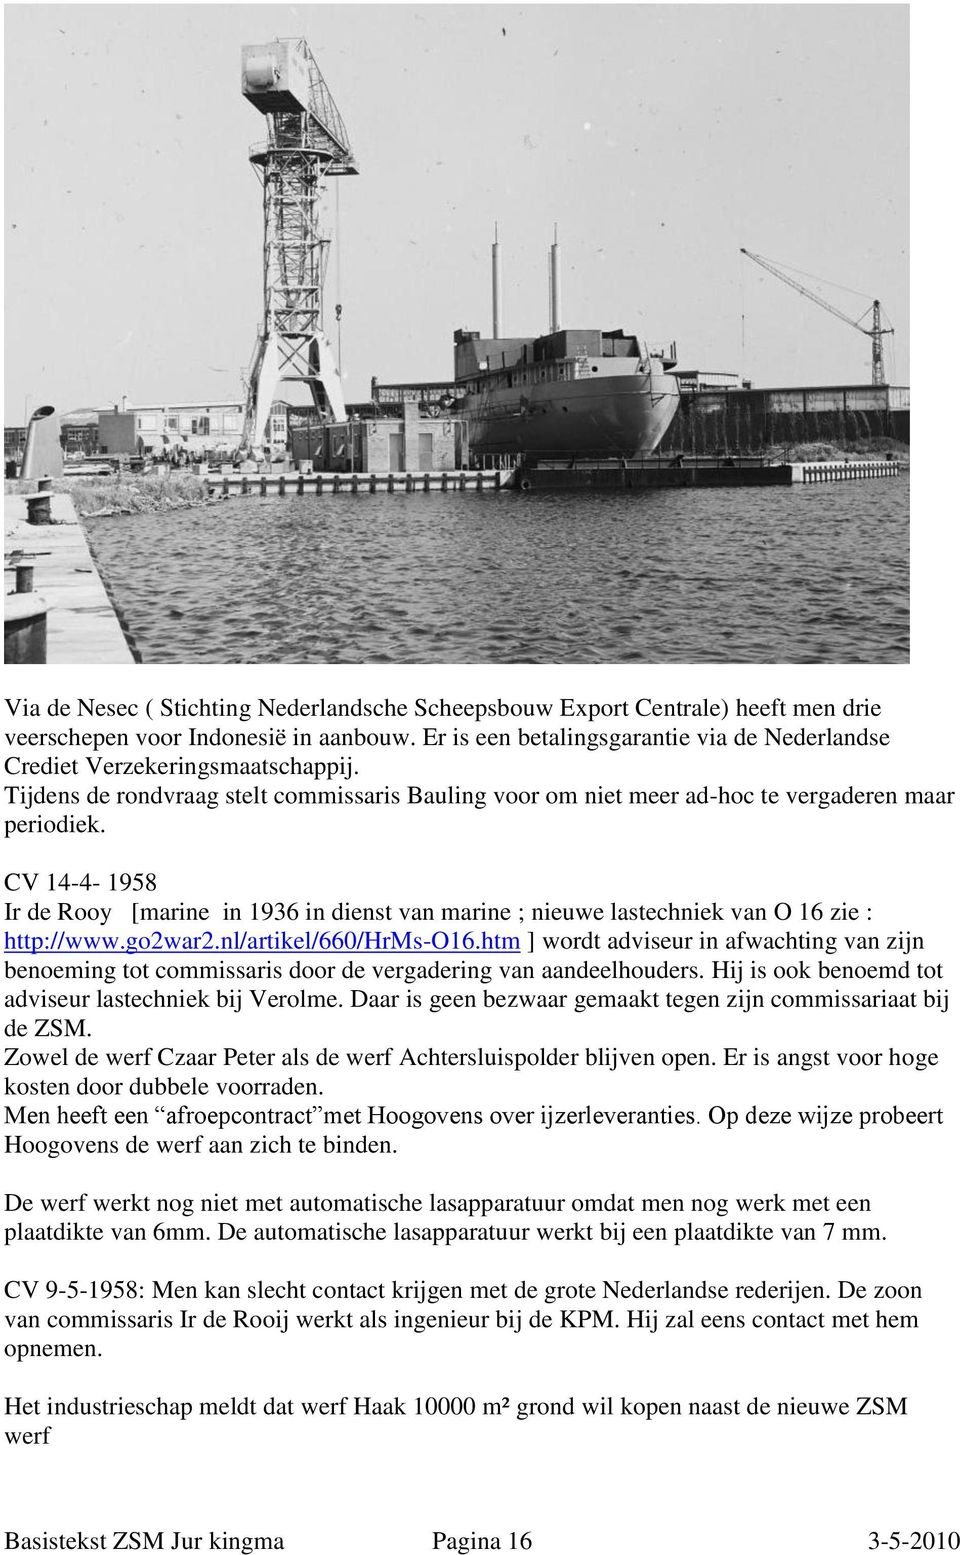 CV 14-4- 1958 Ir de Rooy [marine in 1936 in dienst van marine ; nieuwe lastechniek van O 16 zie : http://www.go2war2.nl/artikel/660/hrms-o16.